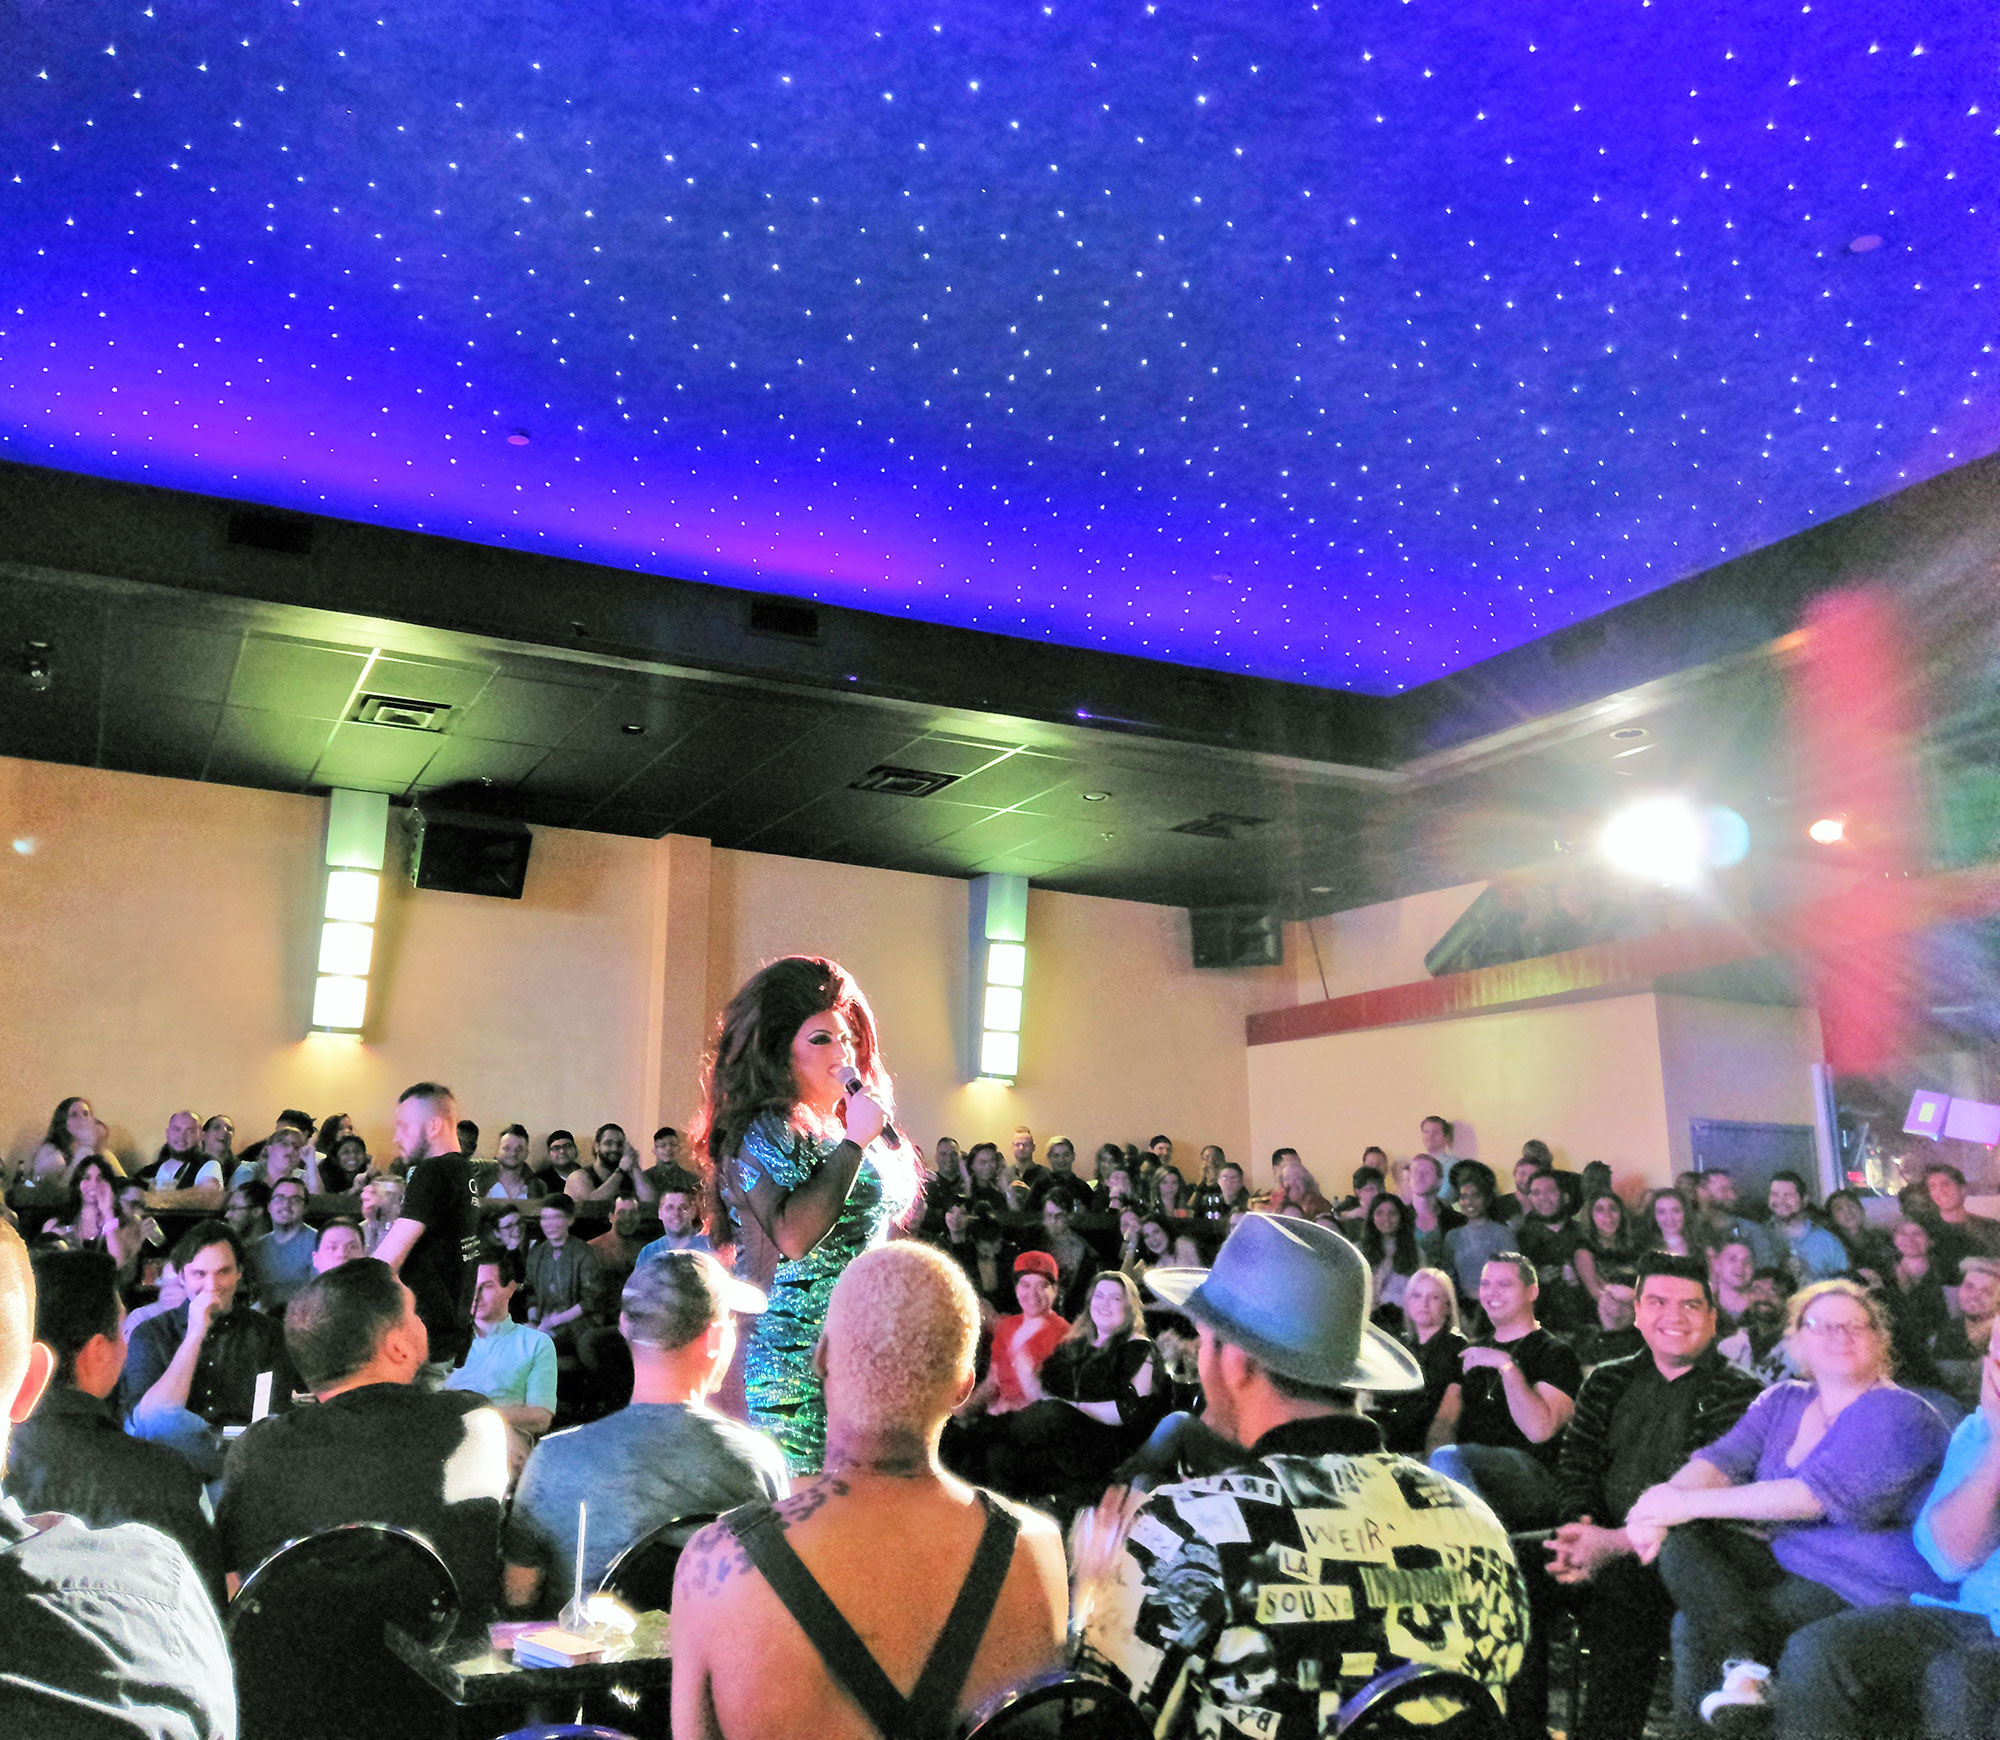 Cassie Nova hosting a drag show at S4 nightclub in Dallas.